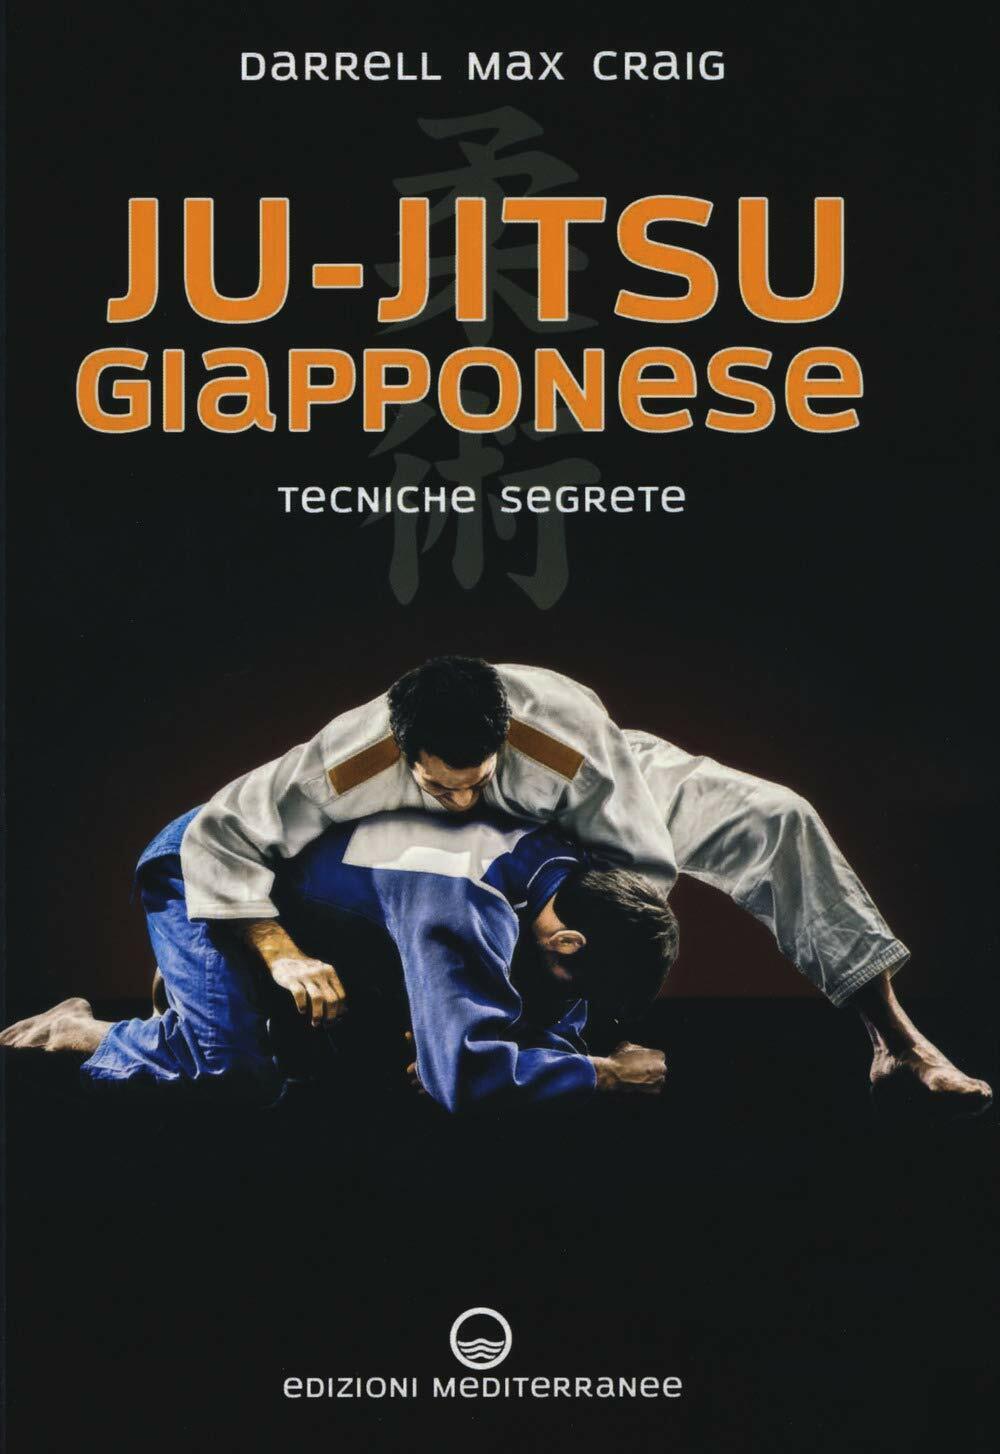 Ju-jitsu giapponese - Darrell Max Craig - Edizioni Mediterranee, 2019 libro usato